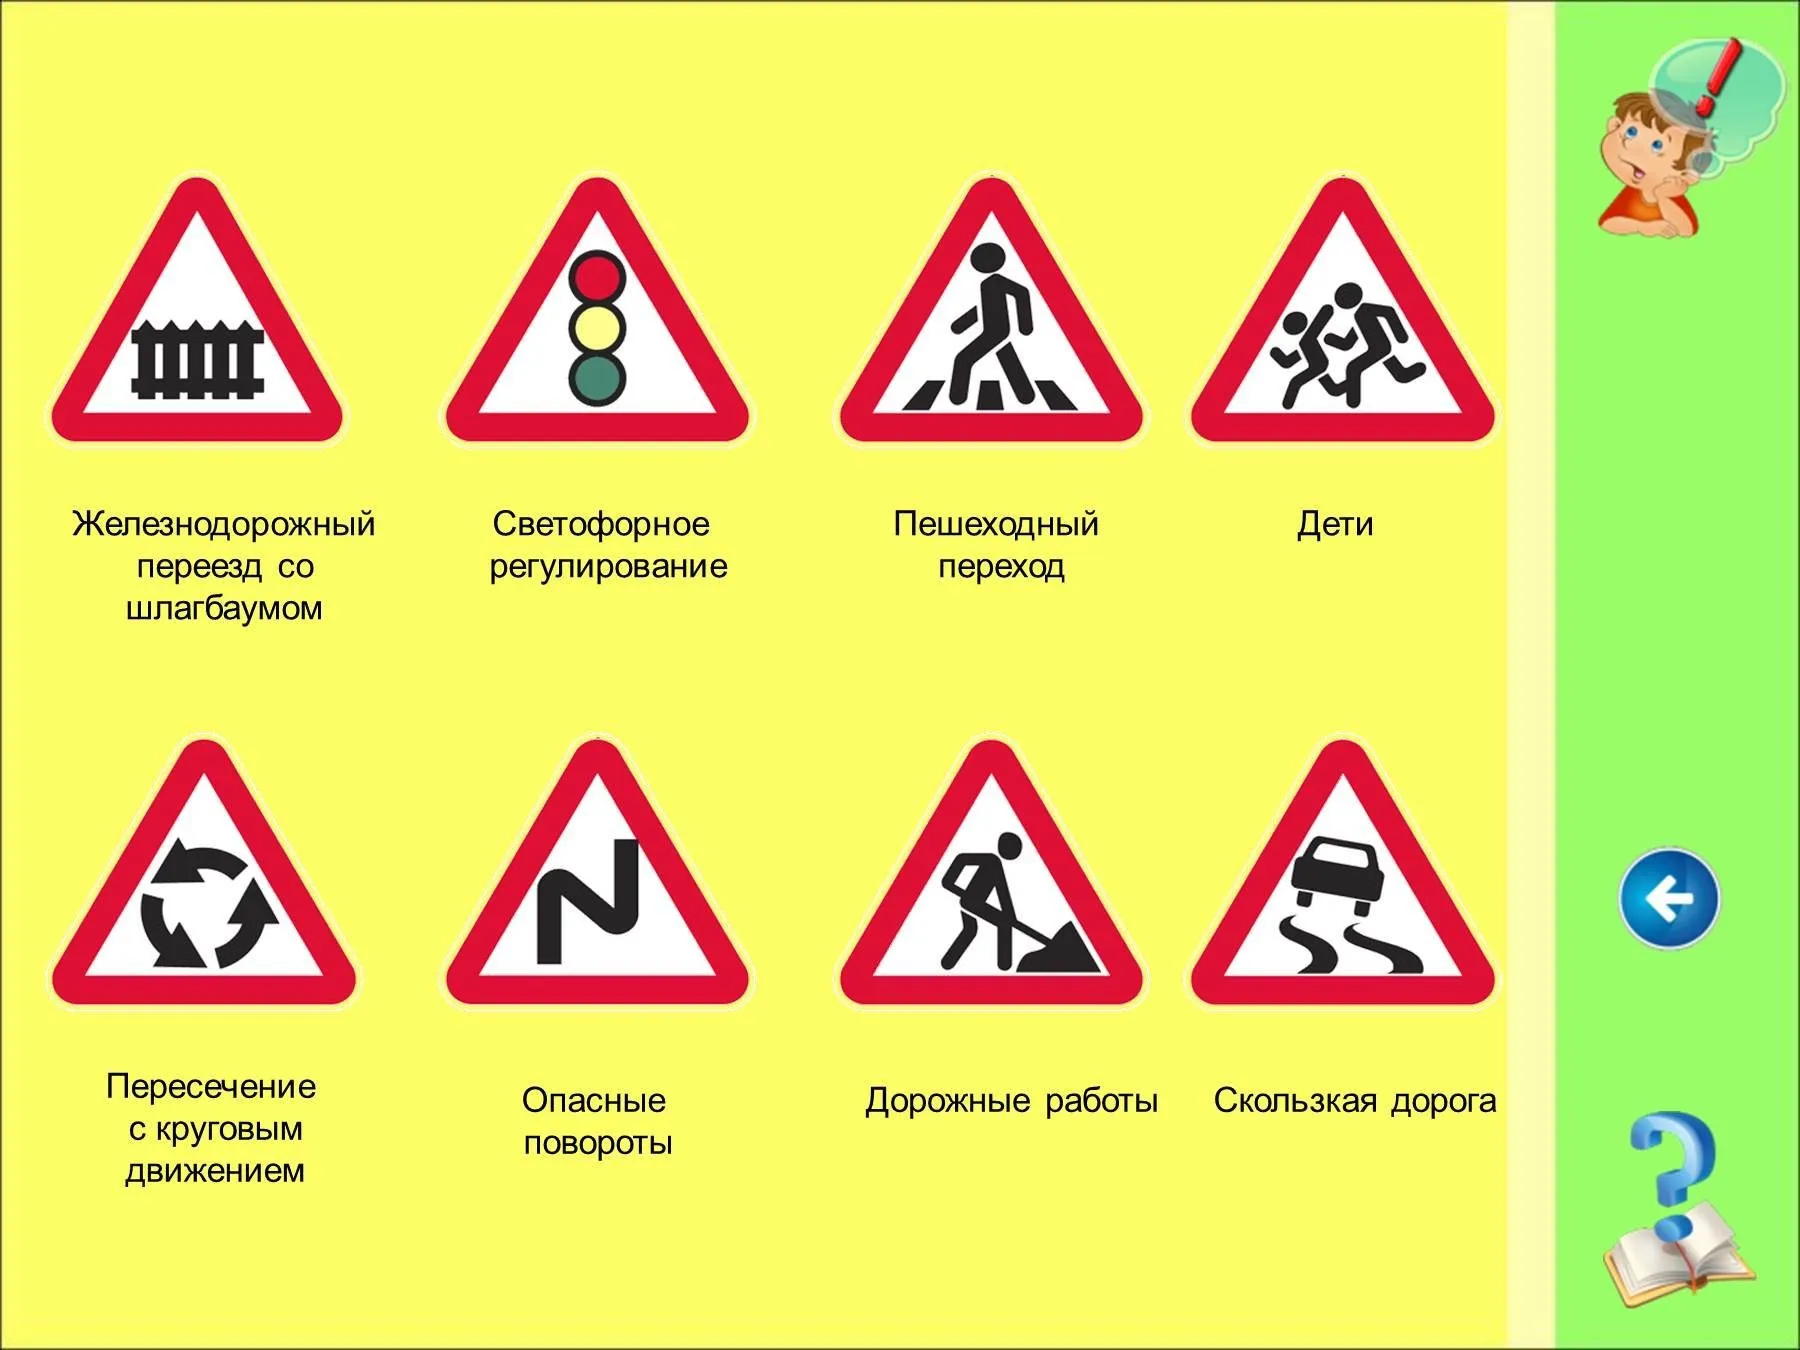 Дорожные знаки в подготовительной группе. Дорожные знаки длядтетей. Иллюстрации дорожных знаков для детей. Ребенок с дорожным знаком. Дорожные знаки для дошкольников.